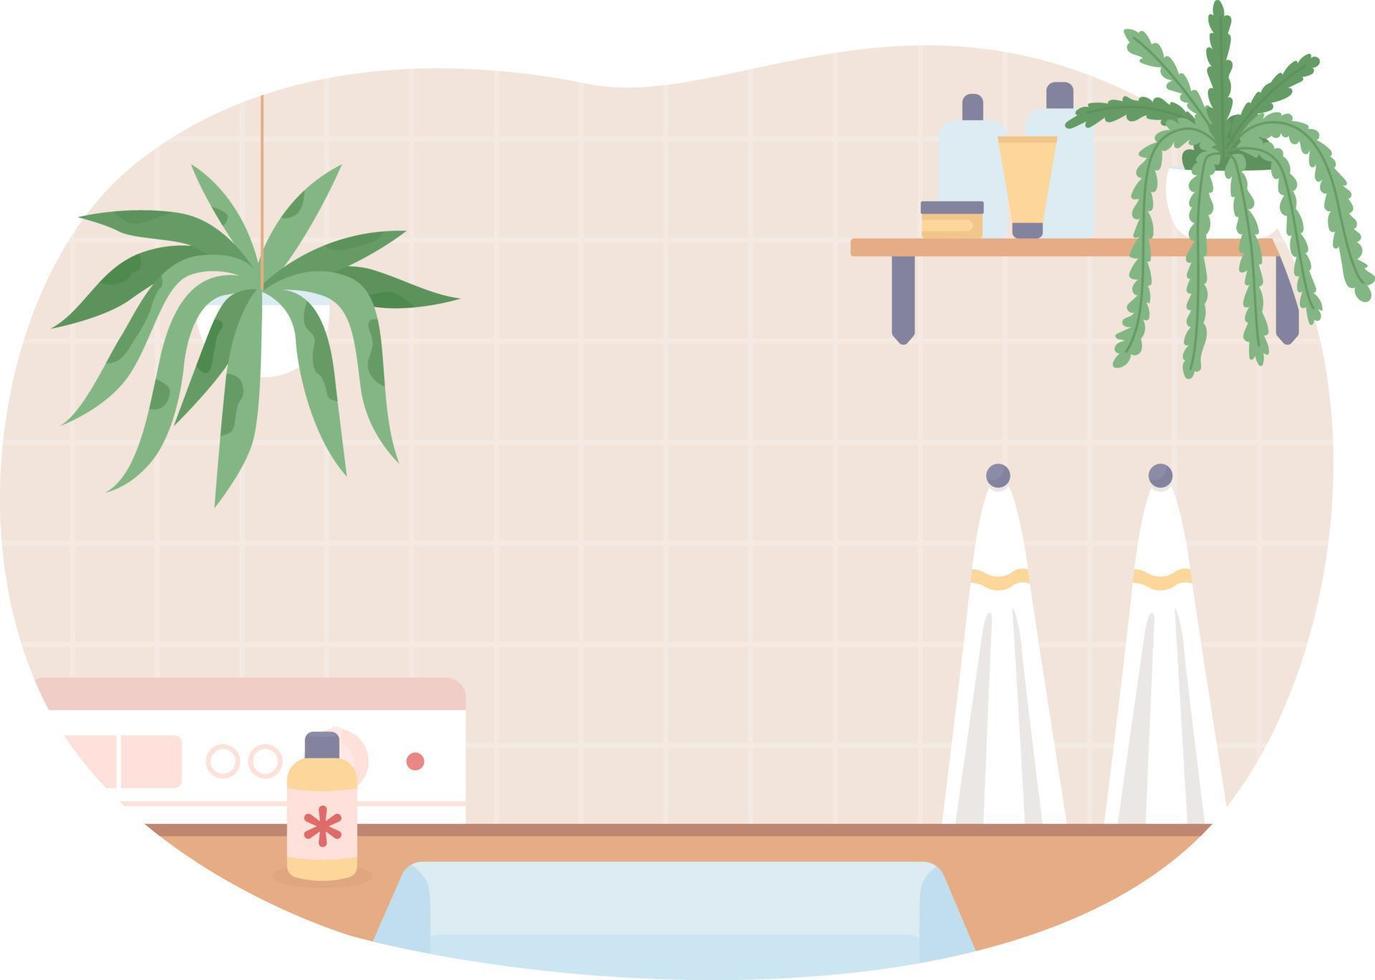 sauberes badezimmer mit zimmerpflanzen 2d-vektor isolierte illustration. heimisches Design. zimmer dekor. flaches hausinneres auf karikaturhintergrund. bunte editierbare szene für handy, website, präsentation vektor